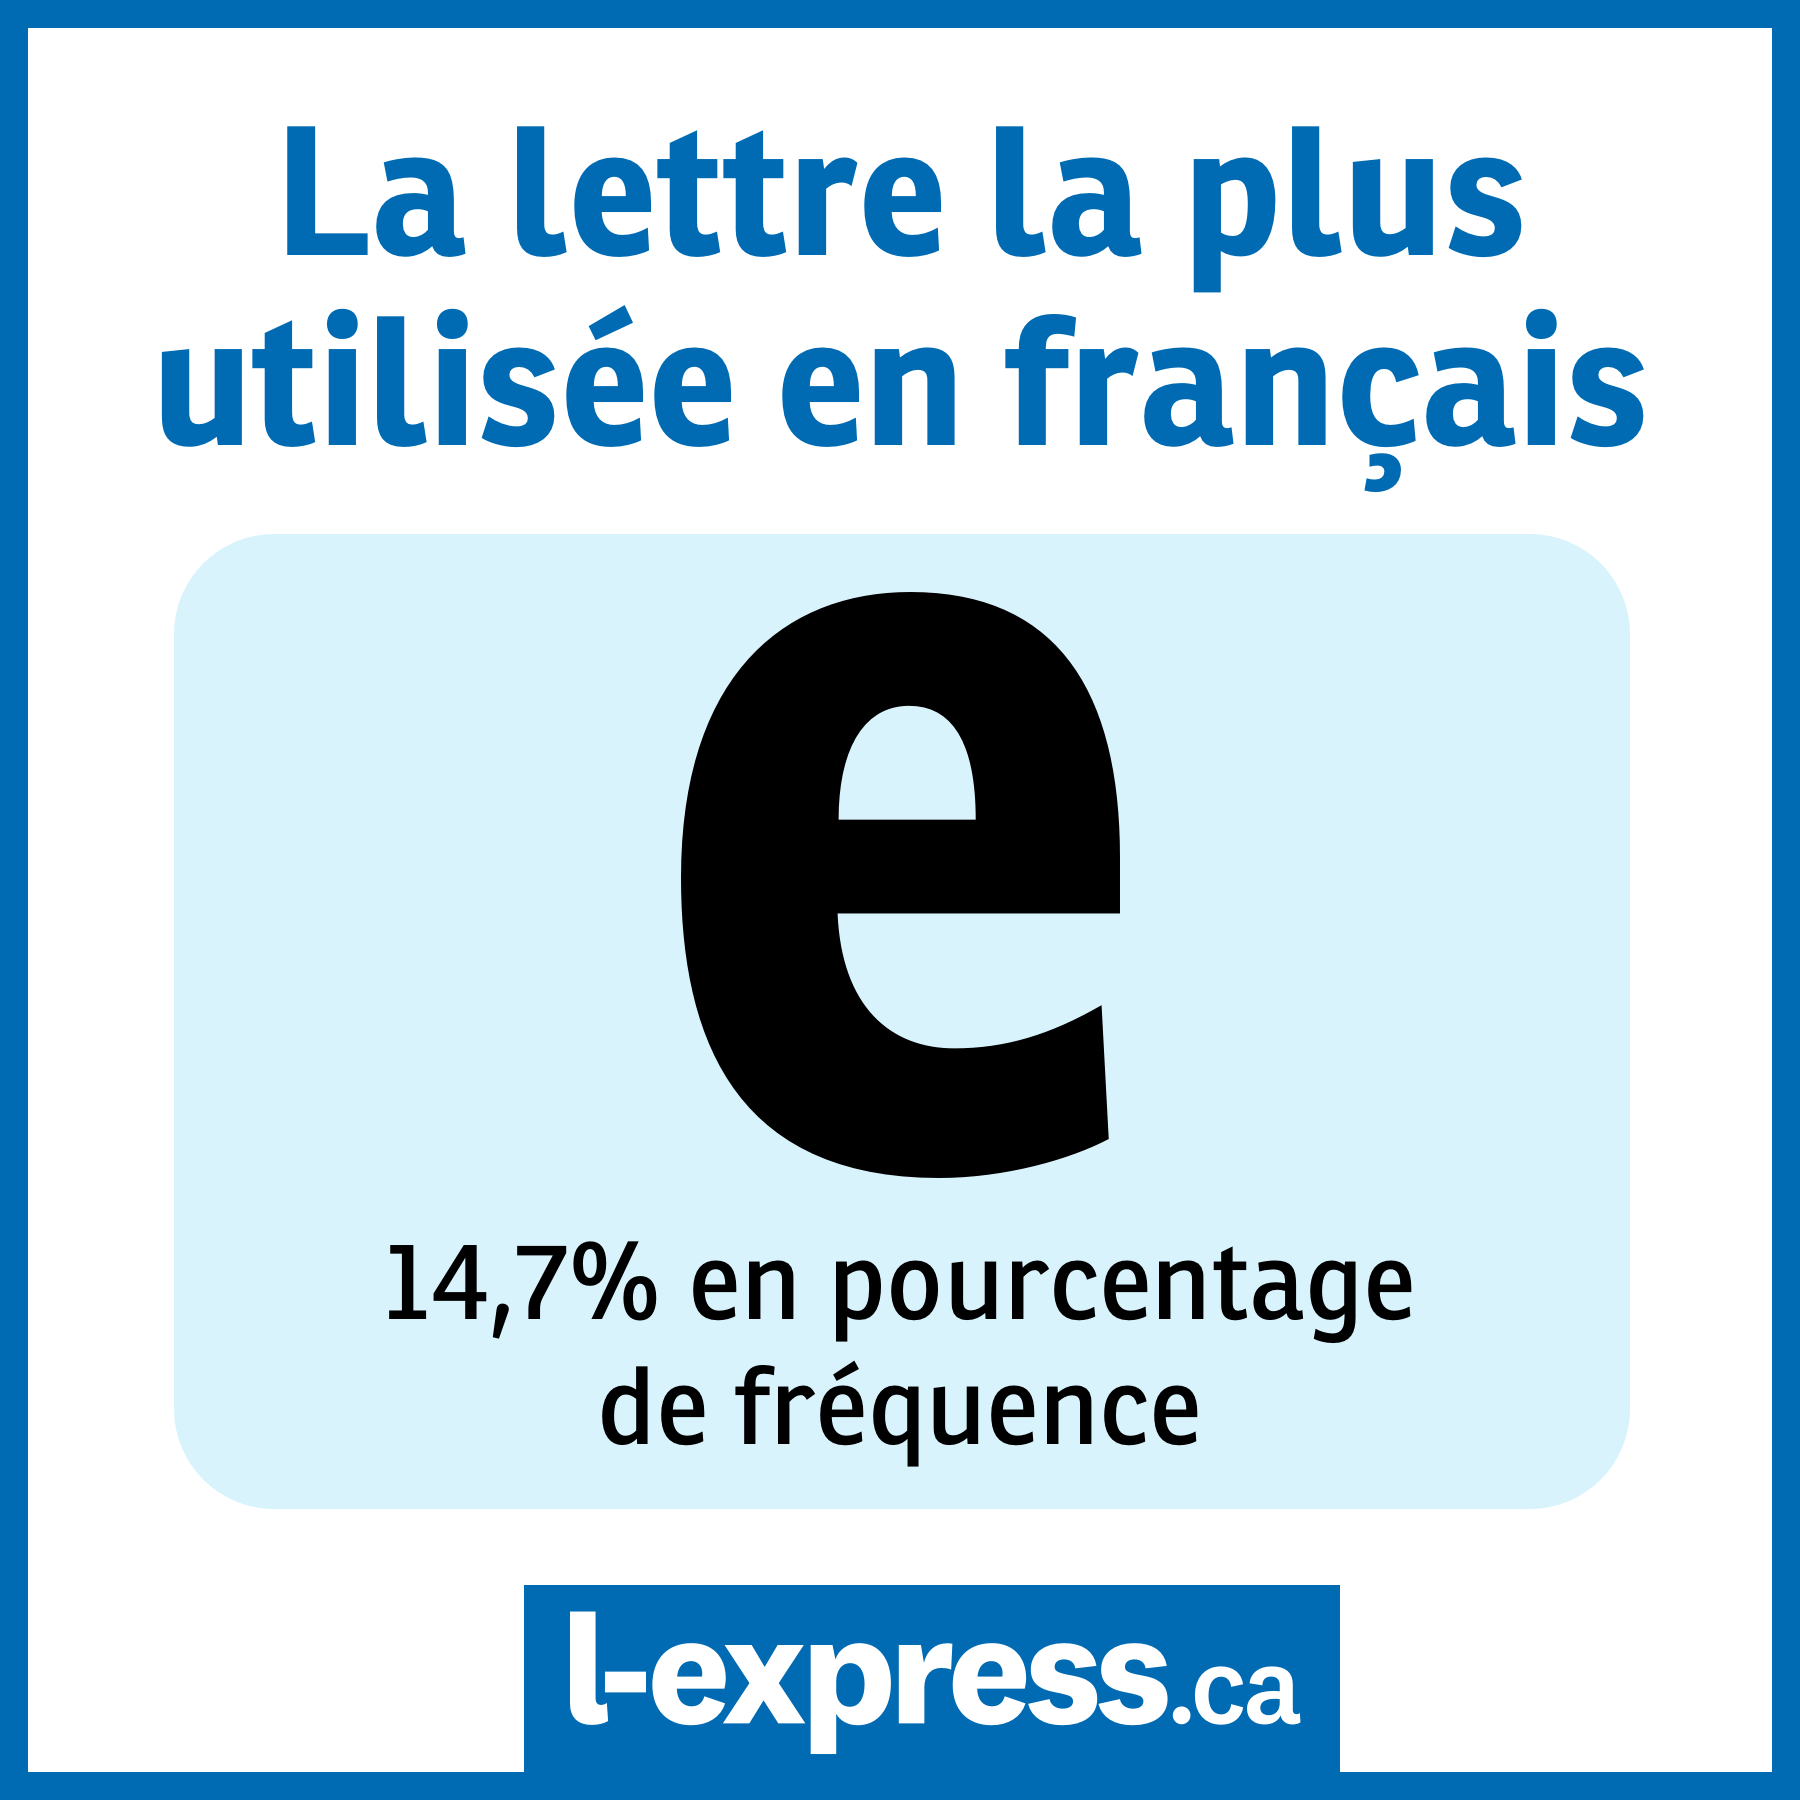 Les lettres et leur fréquence en français - Quelle lettre est la